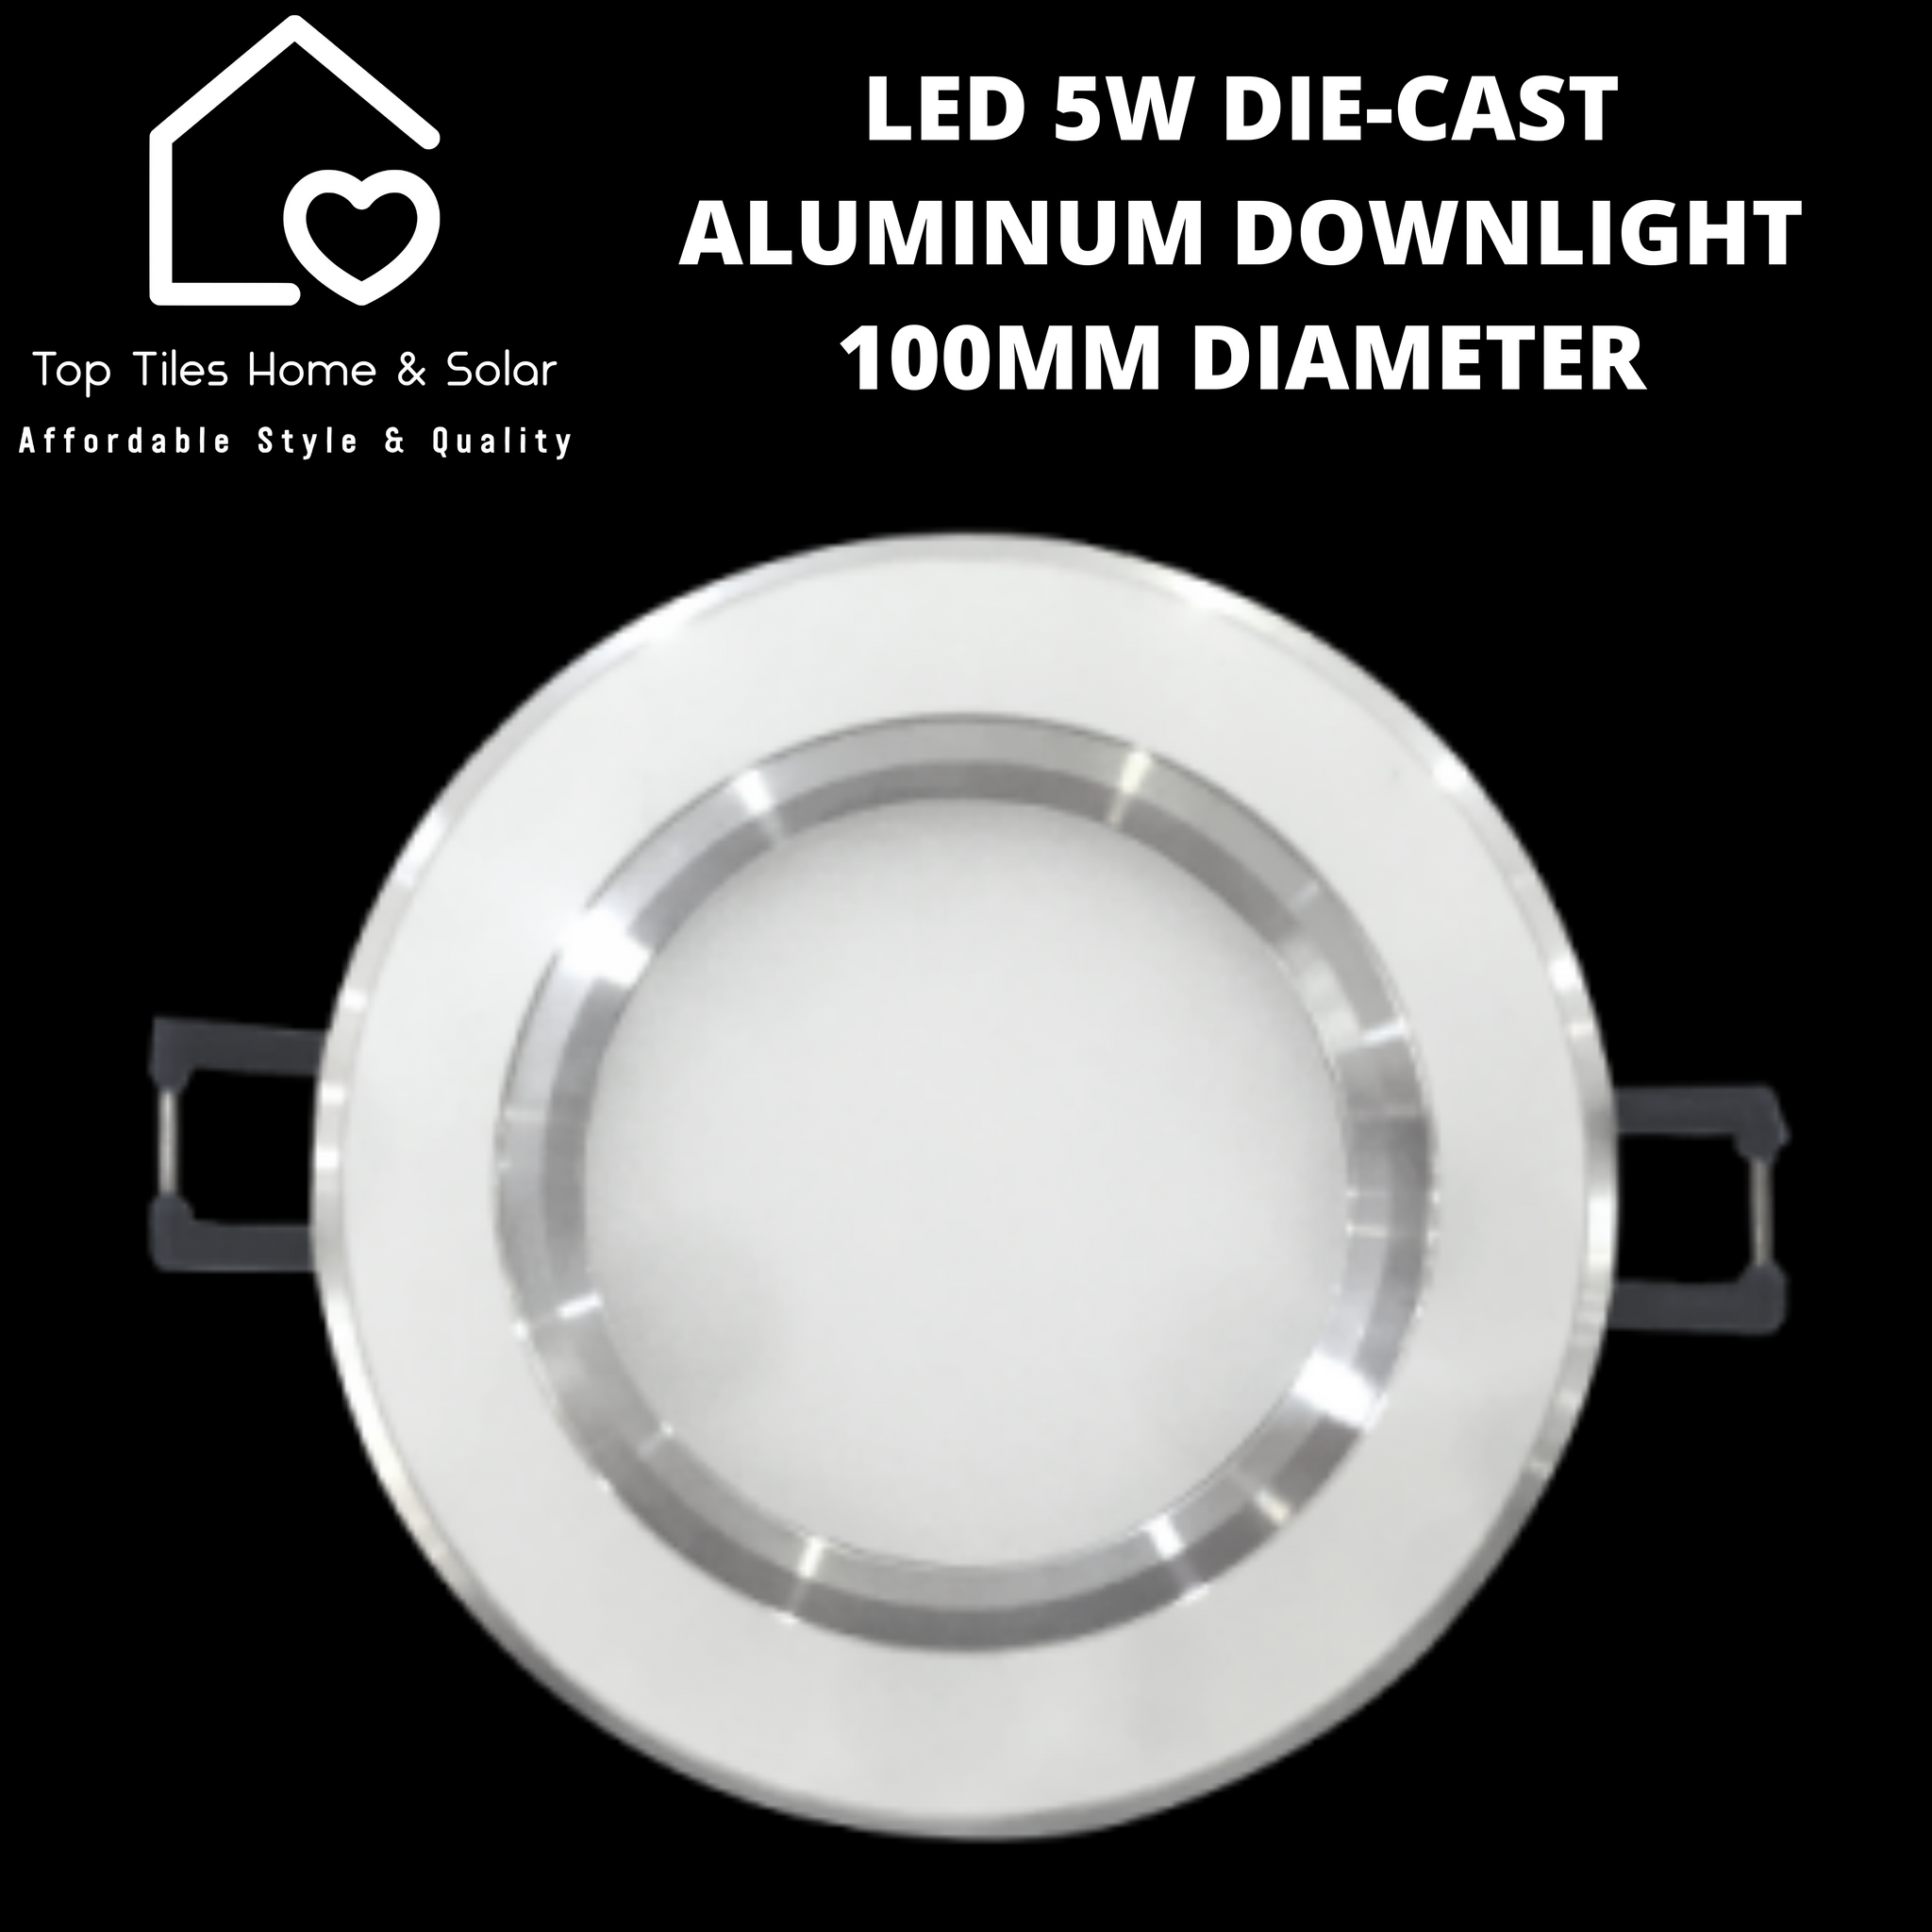 LED 5W Die-Cast Aluminum White Downlight - 100mm Diameter